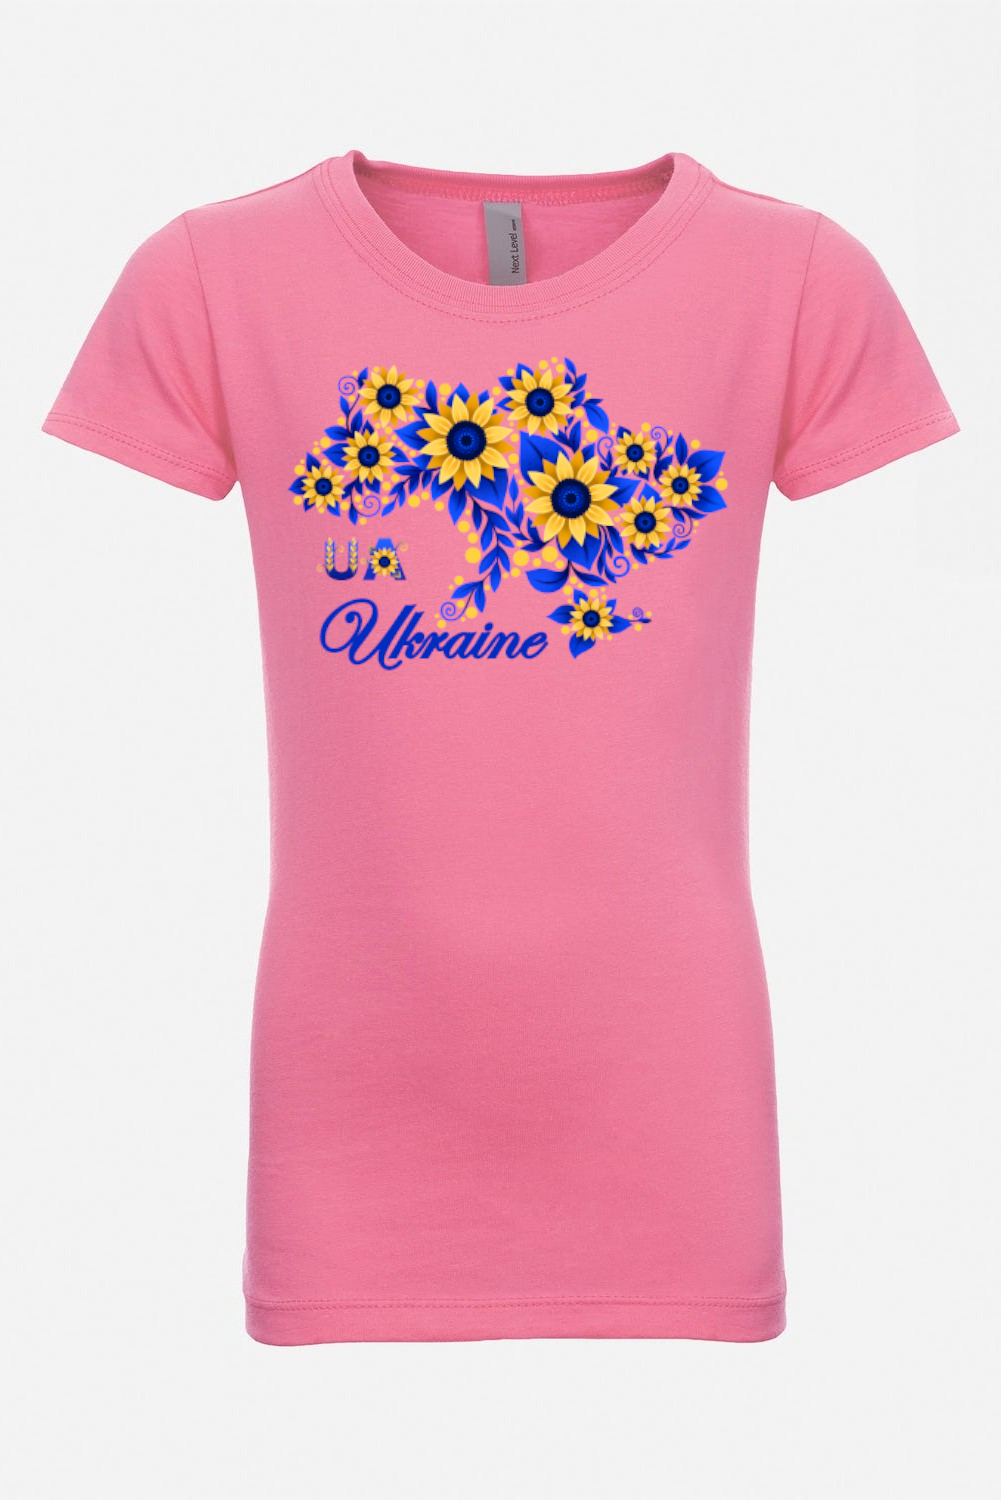 Girl's t-shirt "Sunflower Ukraine"